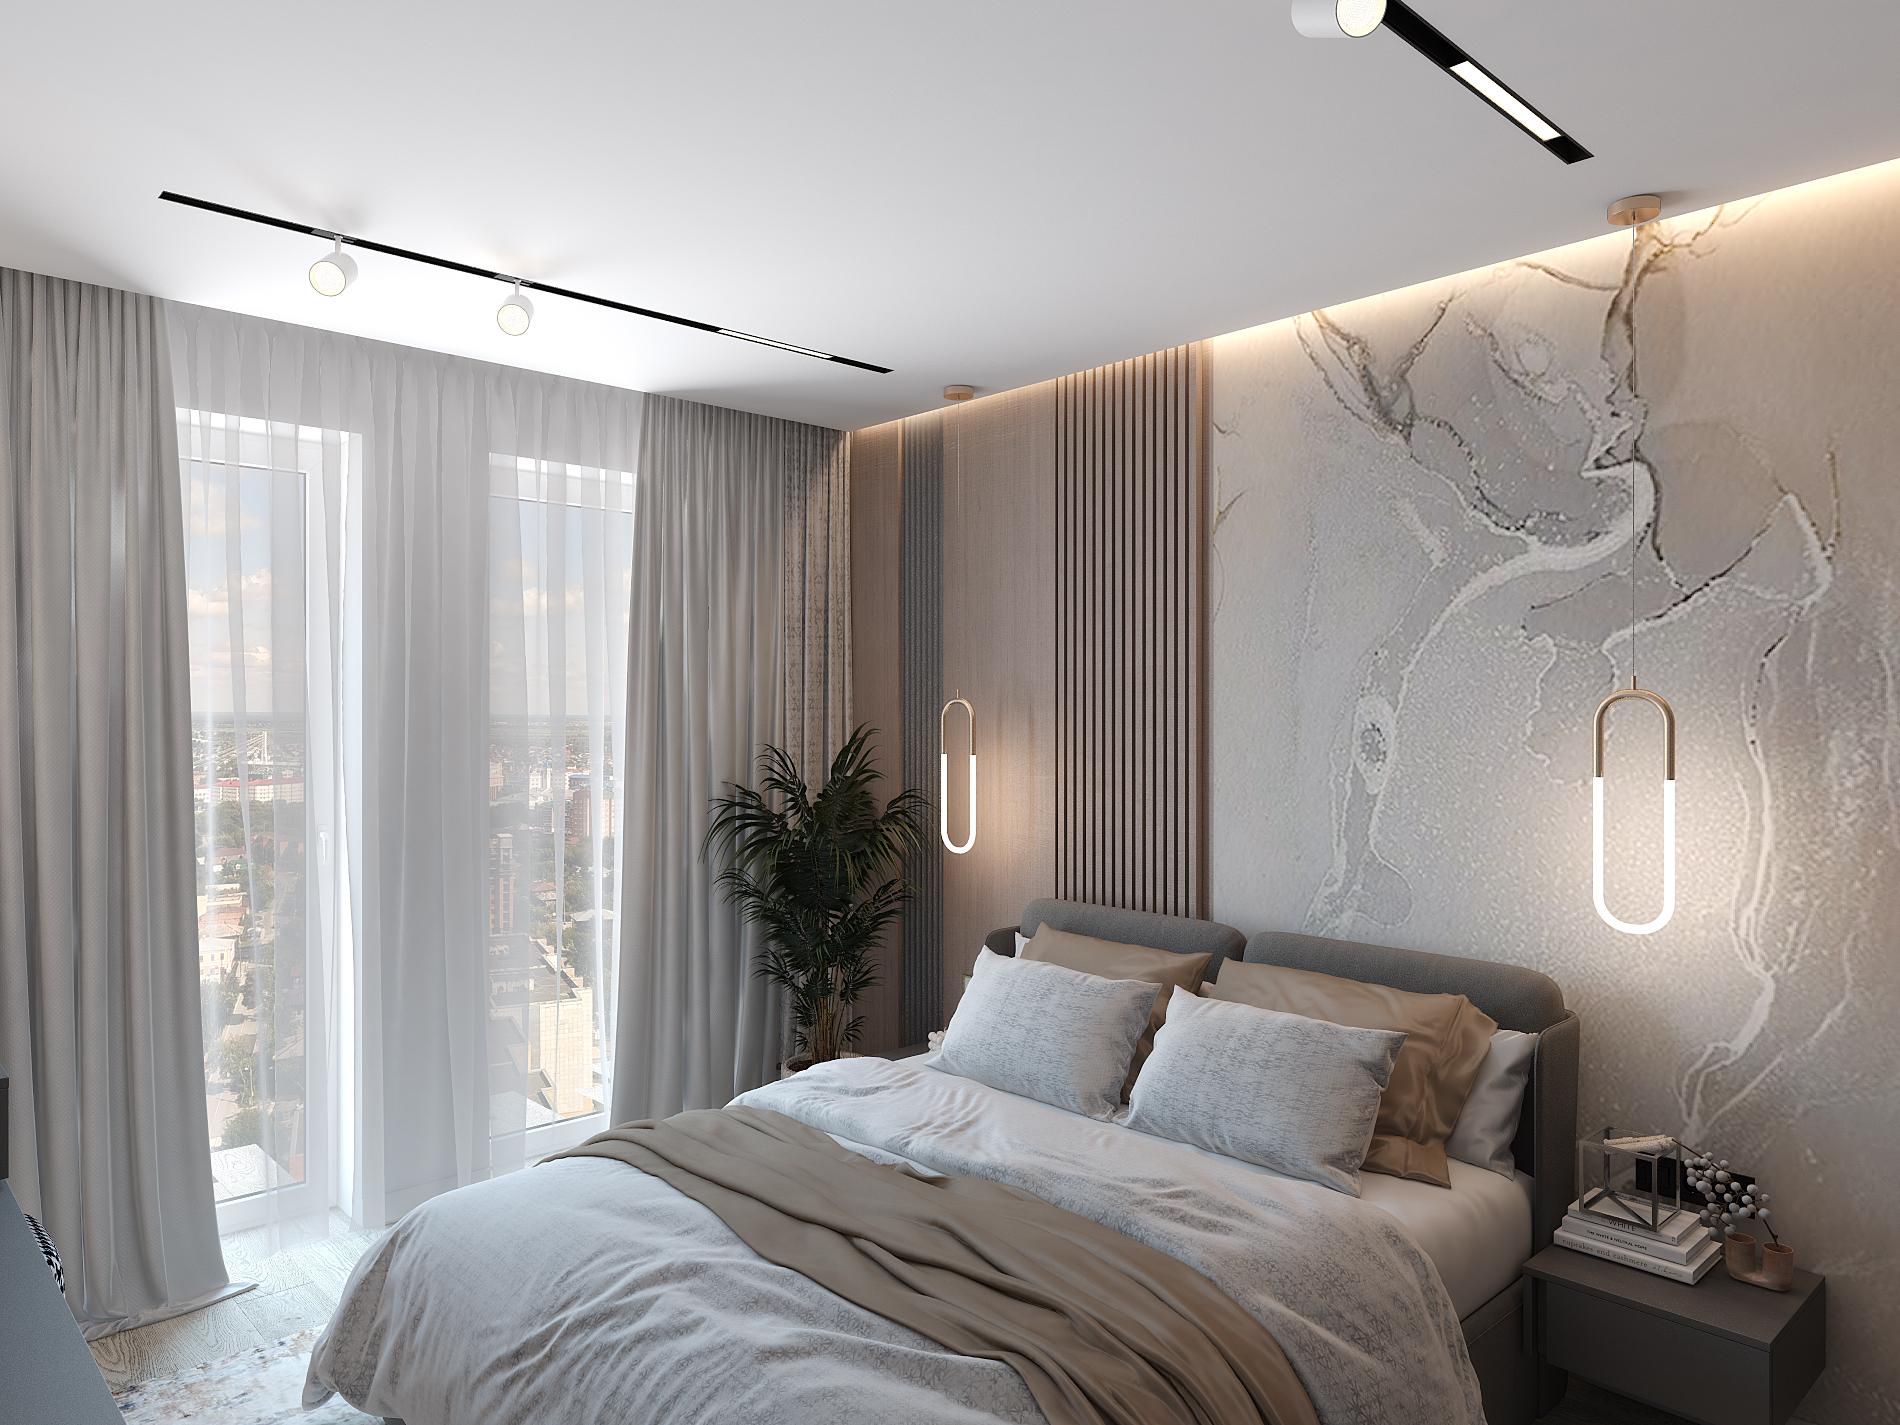 Интерьер спальни cветовыми линиями, рейками с подсветкой, подсветкой настенной, подсветкой светодиодной, светильниками над кроватью и с подсветкой